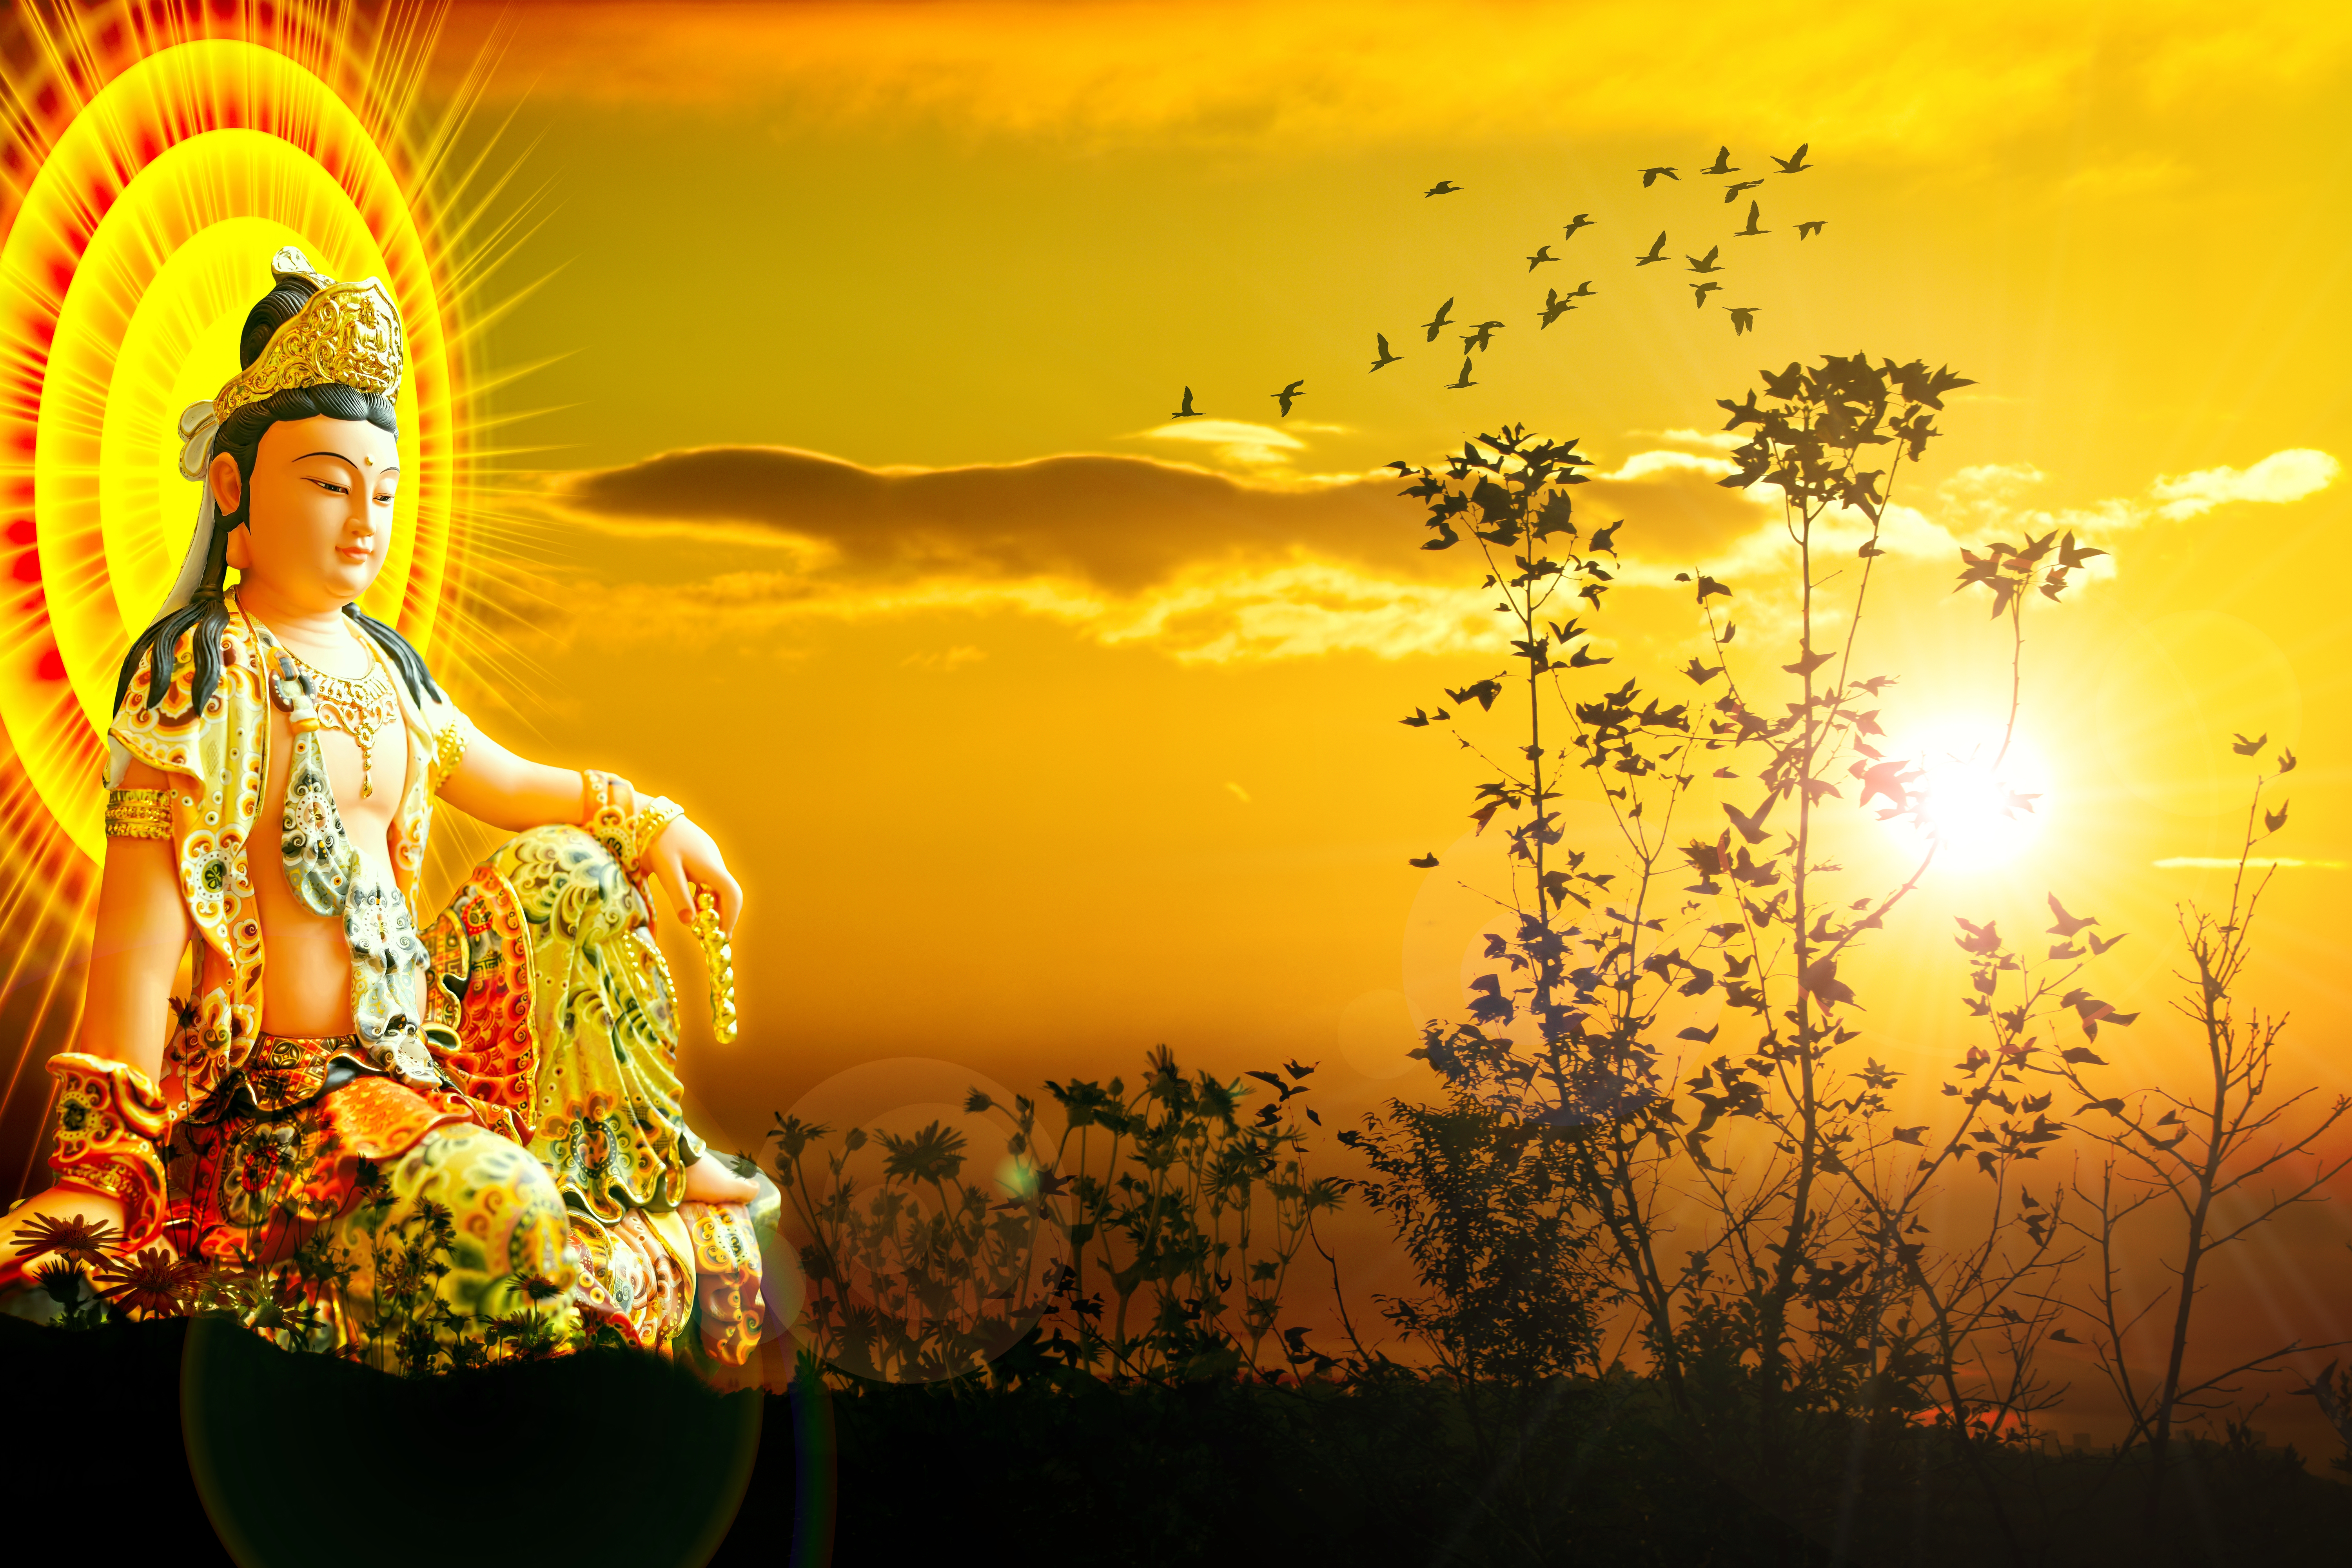 A Di Đà Phật Quan Thế Âm: A Di Đà Phật Quan Thế Âm là một trong những hình ảnh quen thuộc nhất với mọi người trong đời sống thường ngày. Hình ảnh này đại diện cho tình yêu thương và lòng khoan dung của Bồ Tát đối với tất cả mọi người. Hãy để hình ảnh này đưa bạn đến một thế giới tươi sáng và đầy yêu thương.